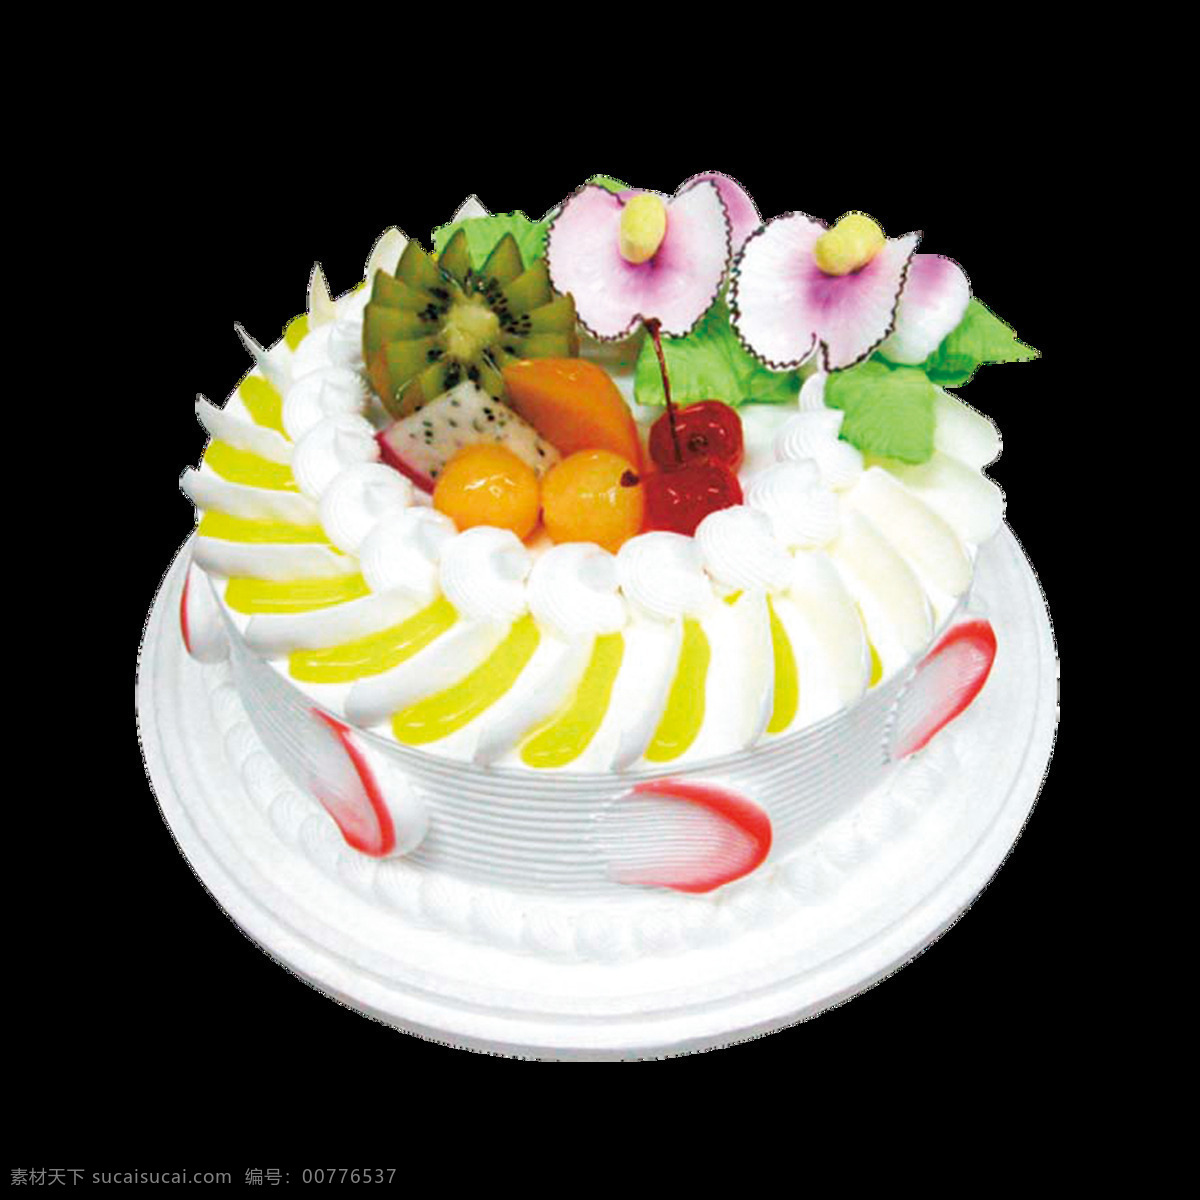 美味 水果 生日蛋糕 蛋糕 蛋糕元素 蛋糕装饰 精美蛋糕素材 奶油蛋糕 生日蛋糕元素